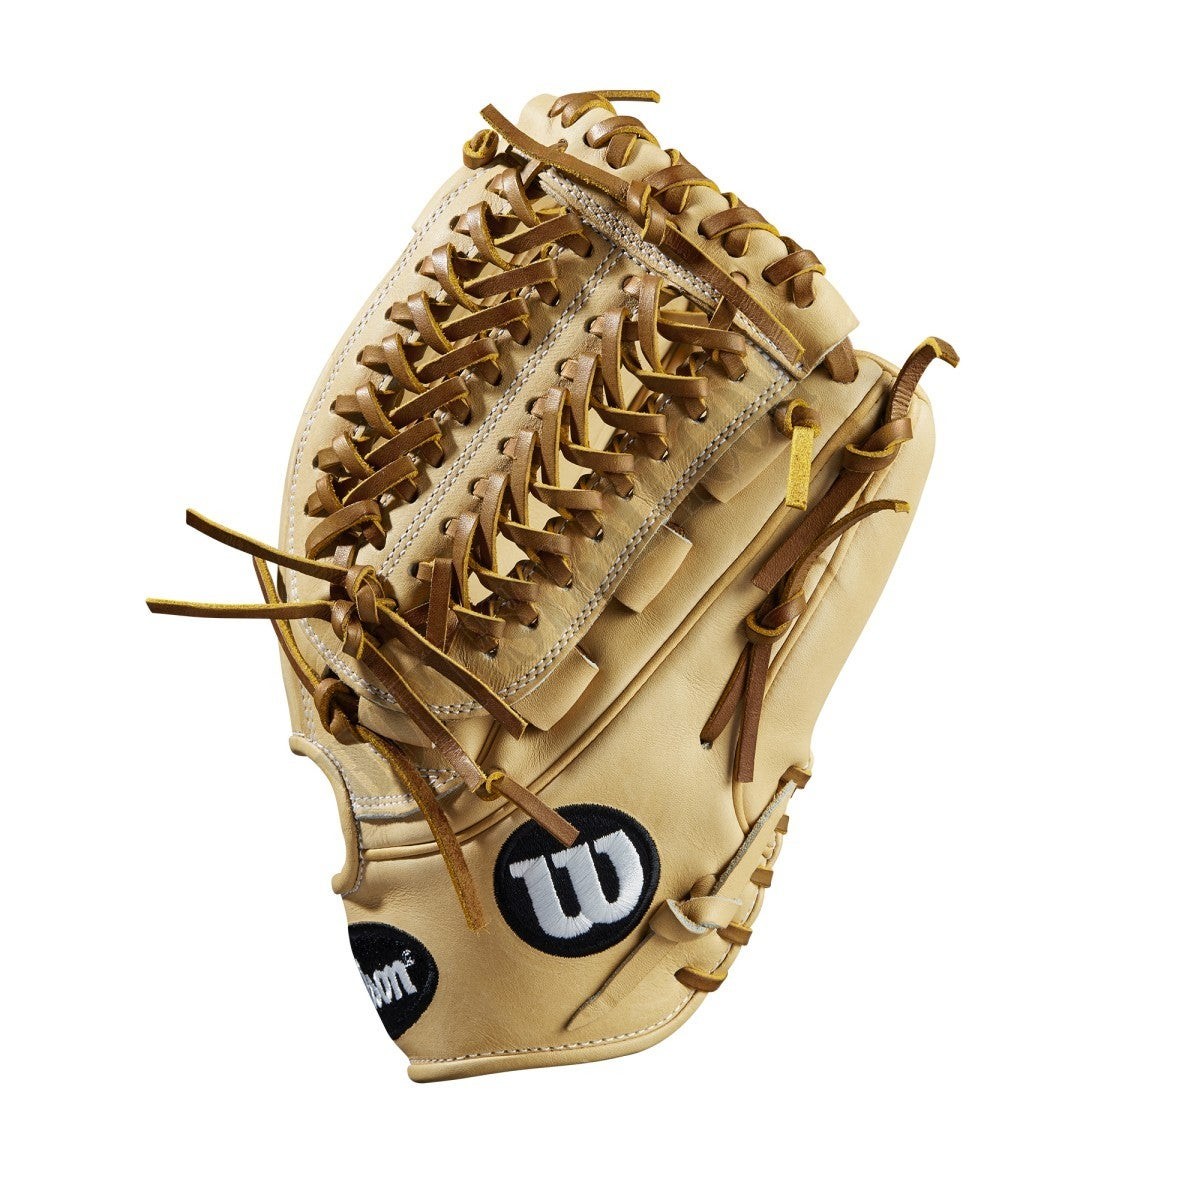 2020 A2K D33 11.75" Pitcher's Baseball Glove ● Wilson Promotions - -3